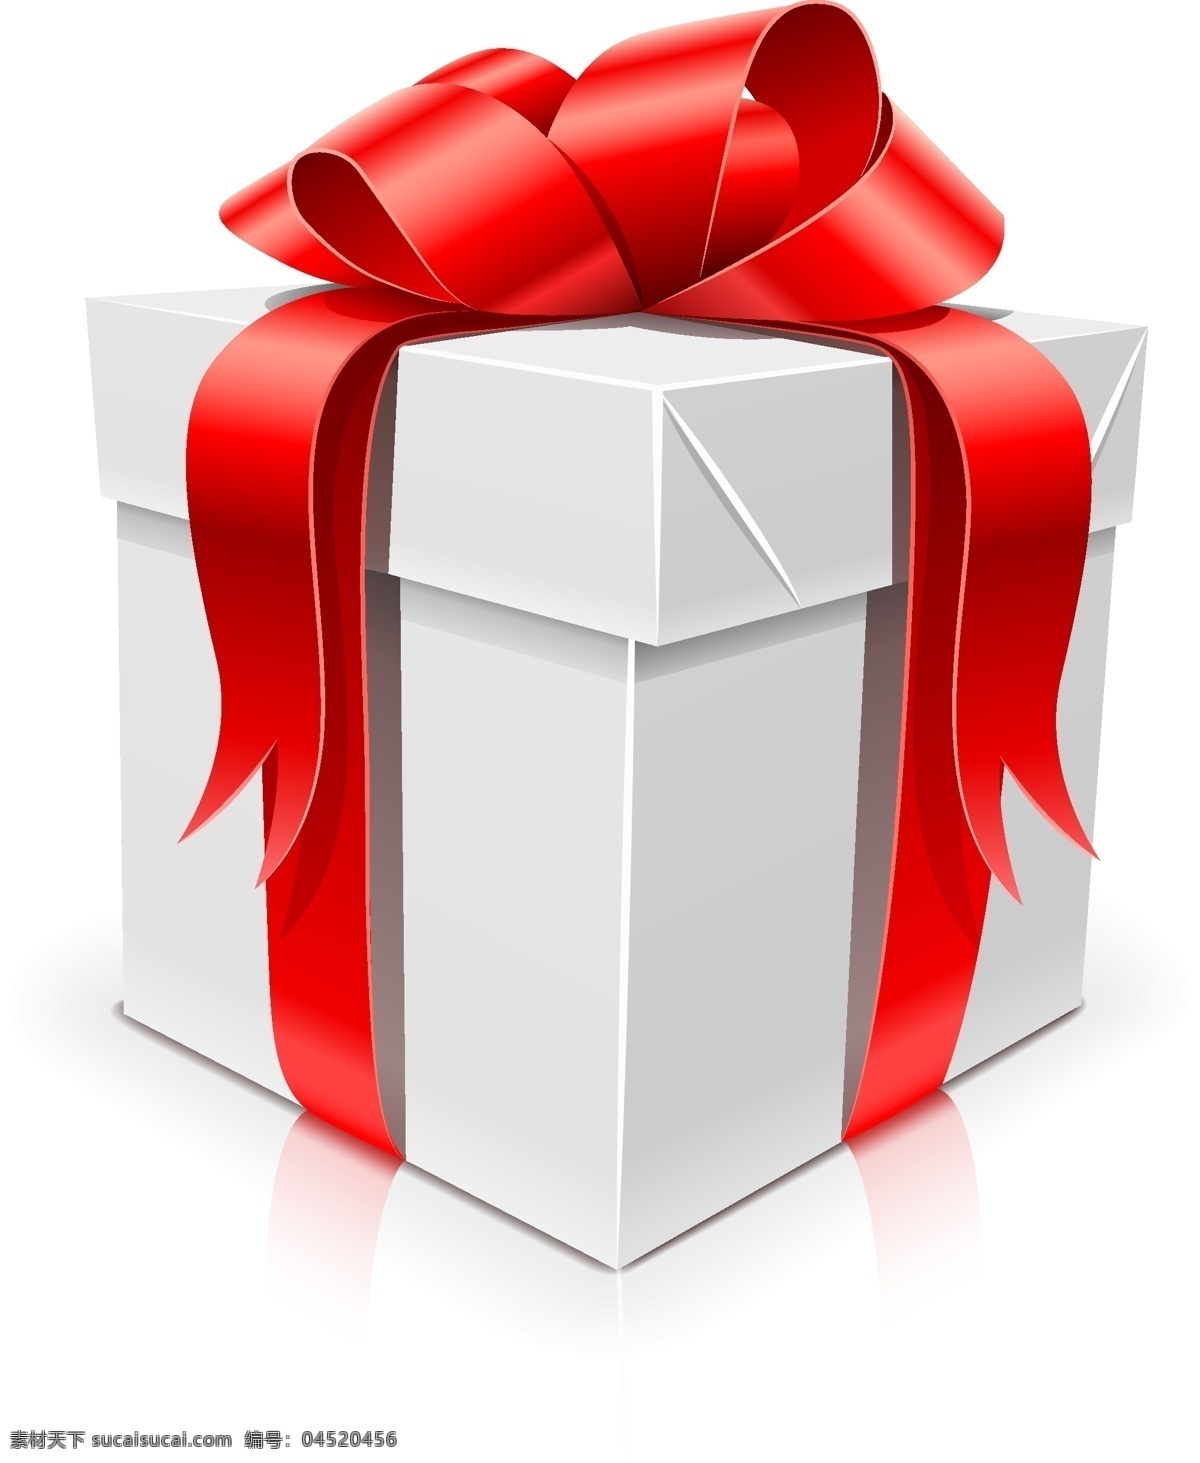 礼盒设计素材 盒子 盒子设计 礼盒 包装 礼物 矢量礼盒 矢量素材 礼品 包装设计 白色